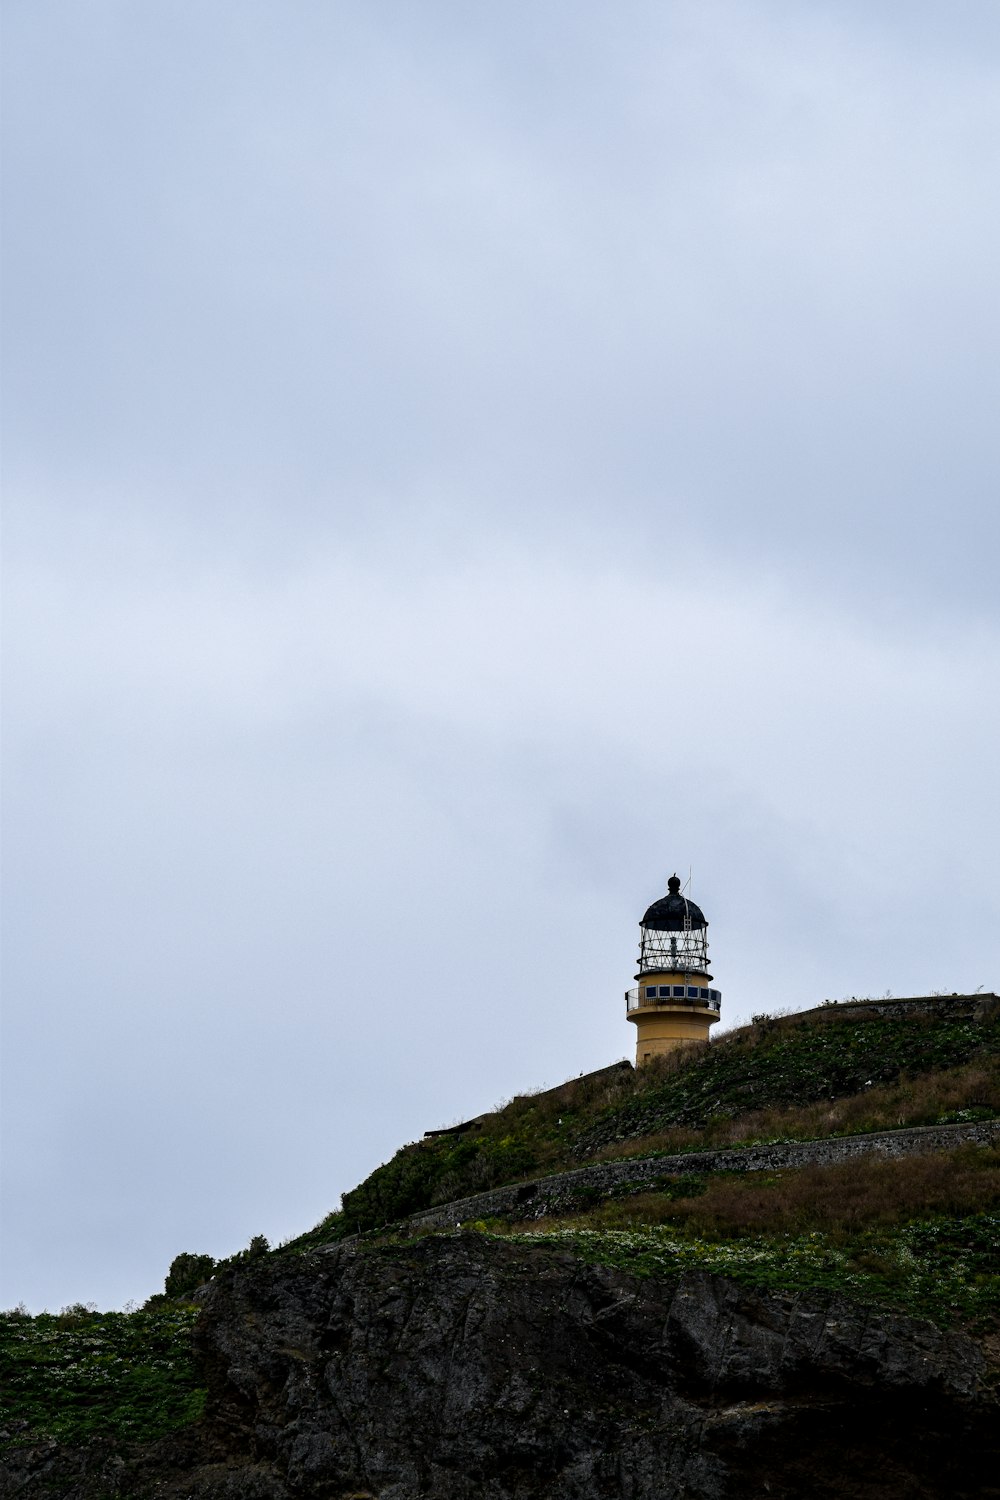 Weißer und schwarzer Leuchtturm auf grünem Gras bedecktem Hügel unter weißem, bewölktem Himmel während des Tages